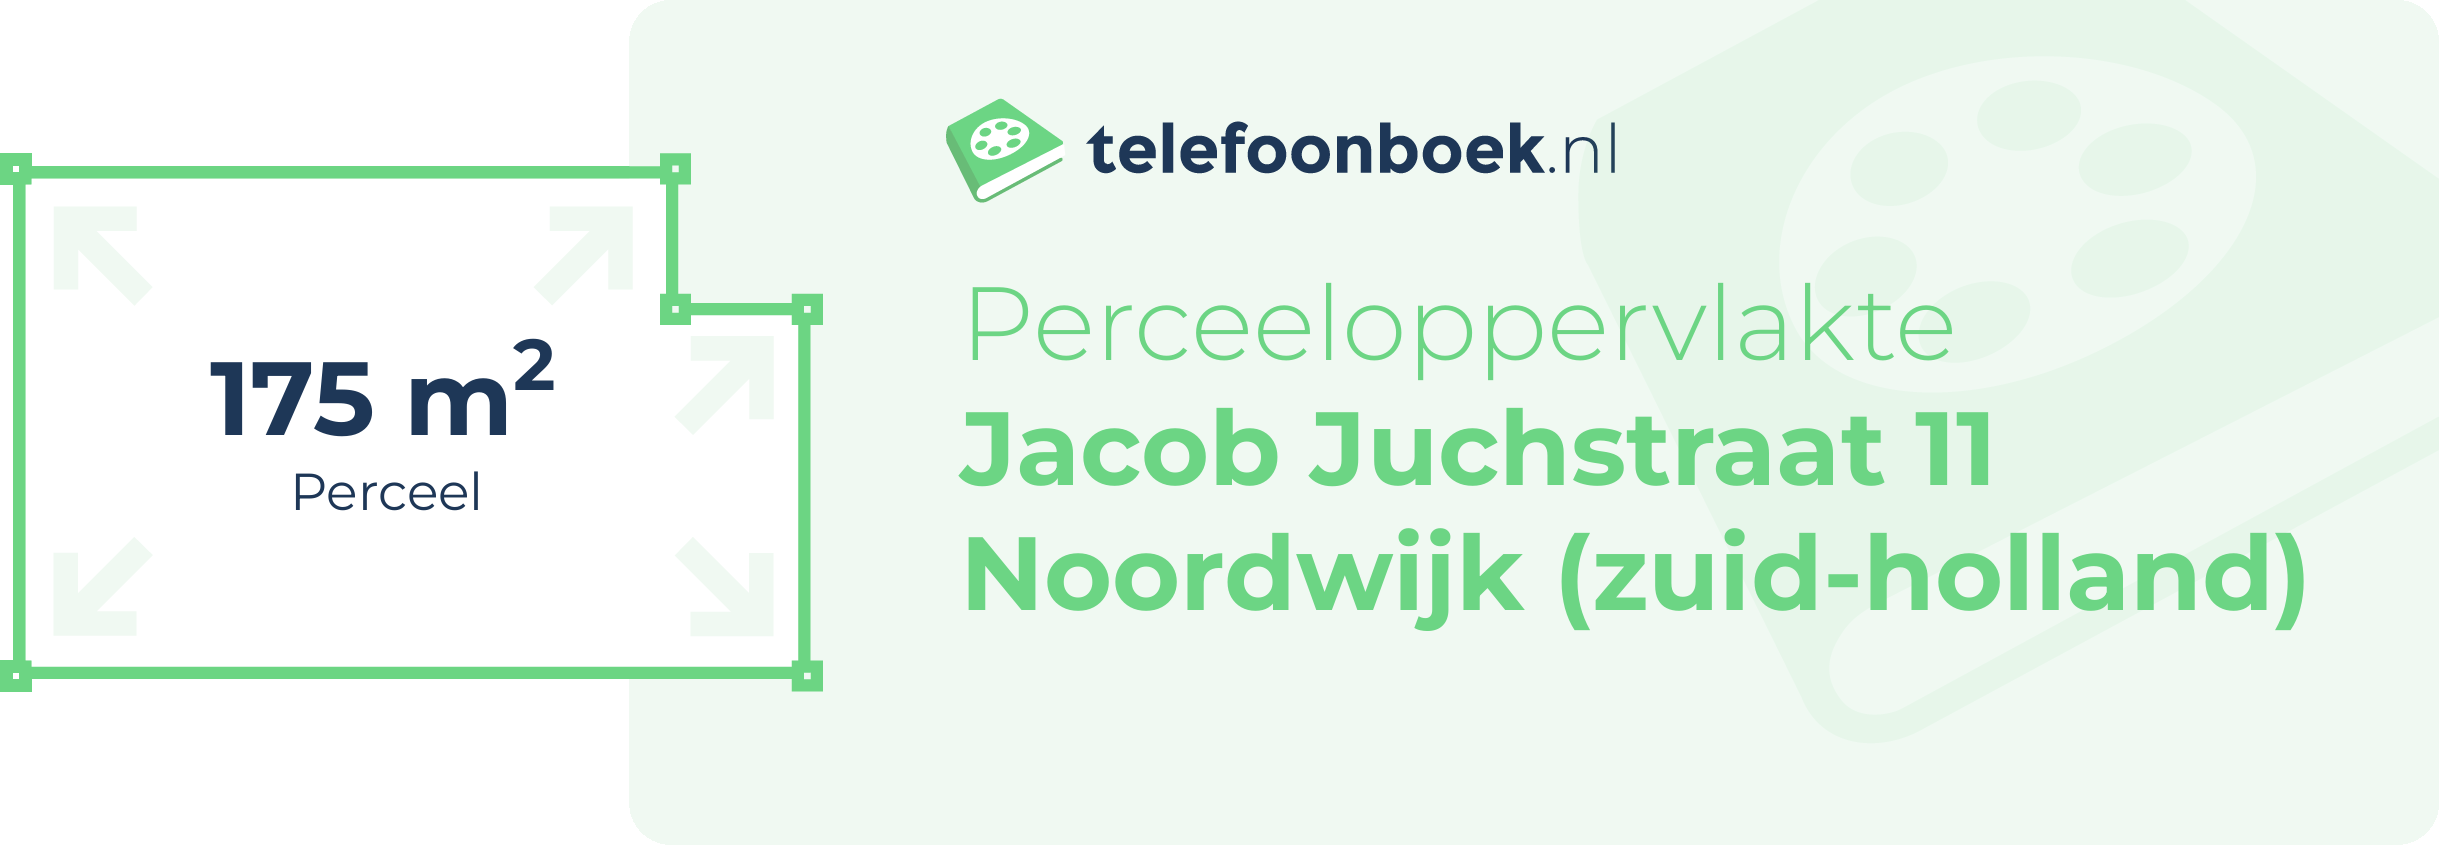 Perceeloppervlakte Jacob Juchstraat 11 Noordwijk (Zuid-Holland)